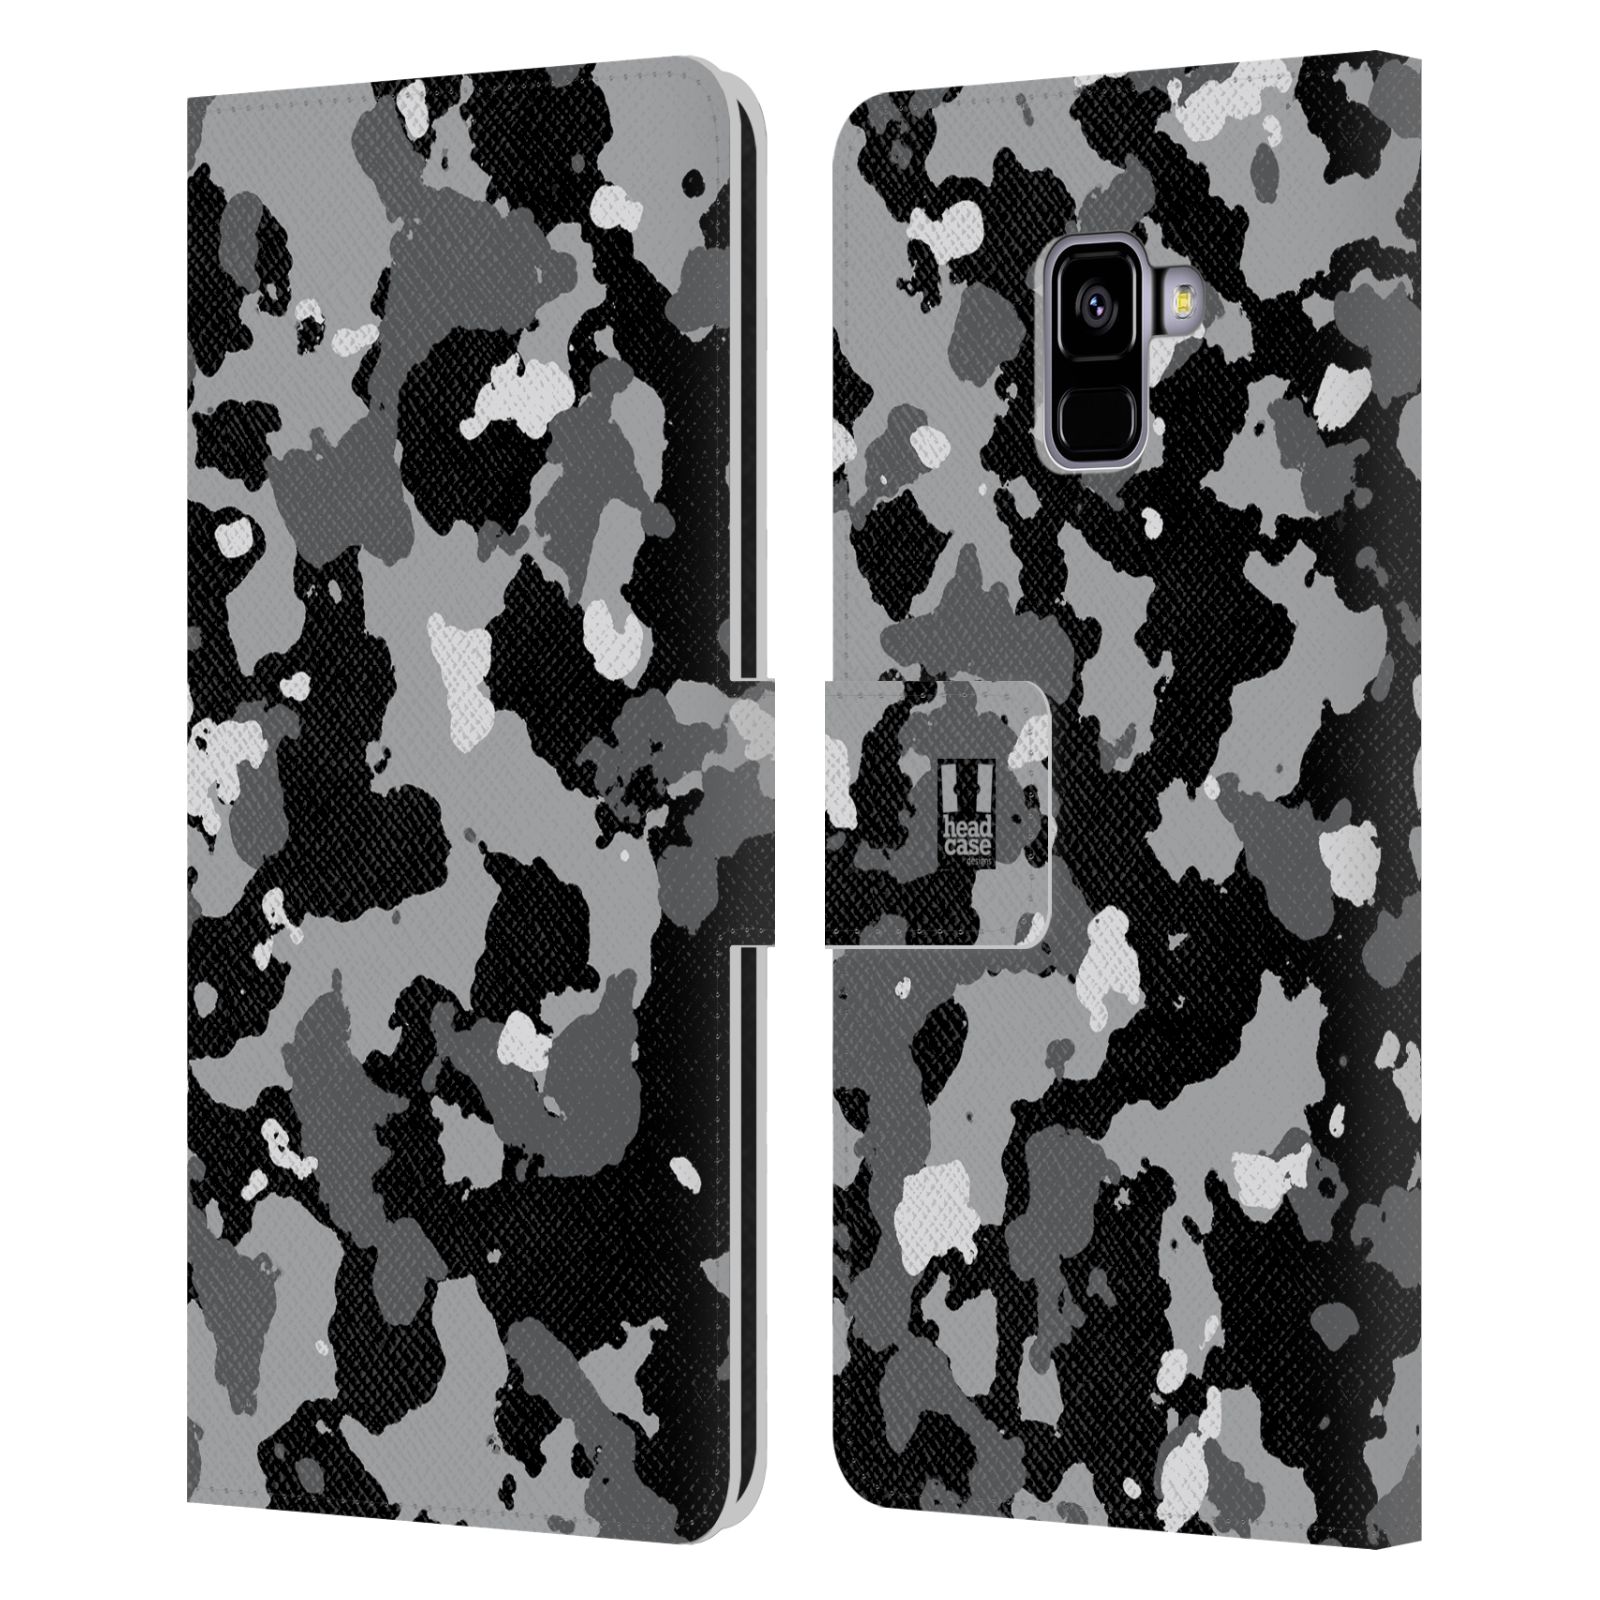 Pouzdro na mobil Samsung Galaxy A8 PLUS 2018 - Head Case - kamuflaž černá a šedá